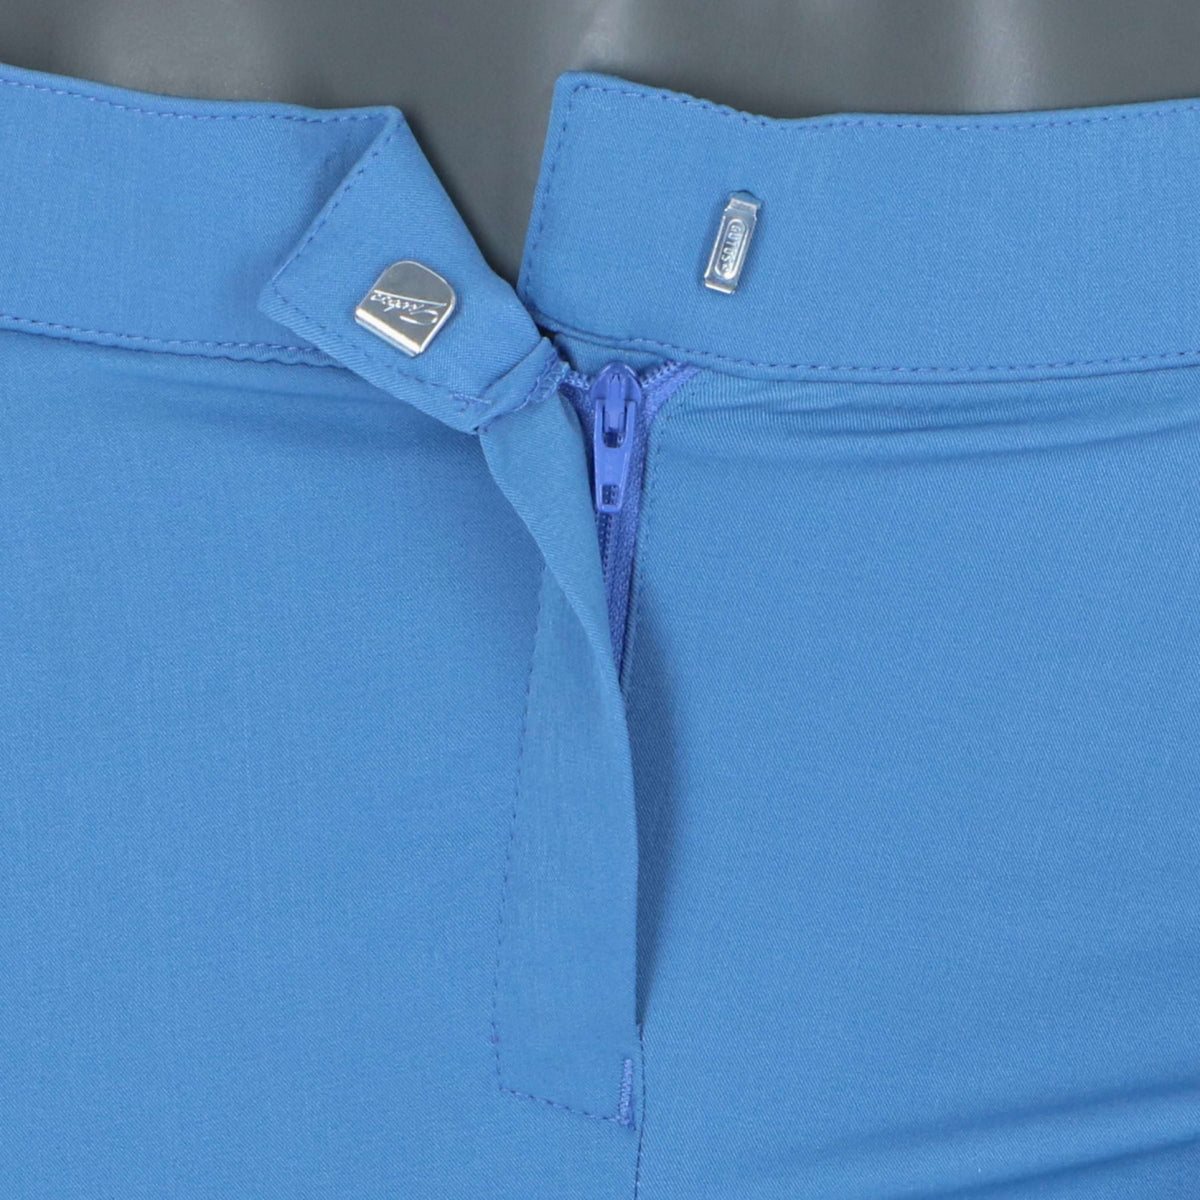 HKM Pantalon d'Équitation Sunshine Silicone Genouillères Bleu Jeans